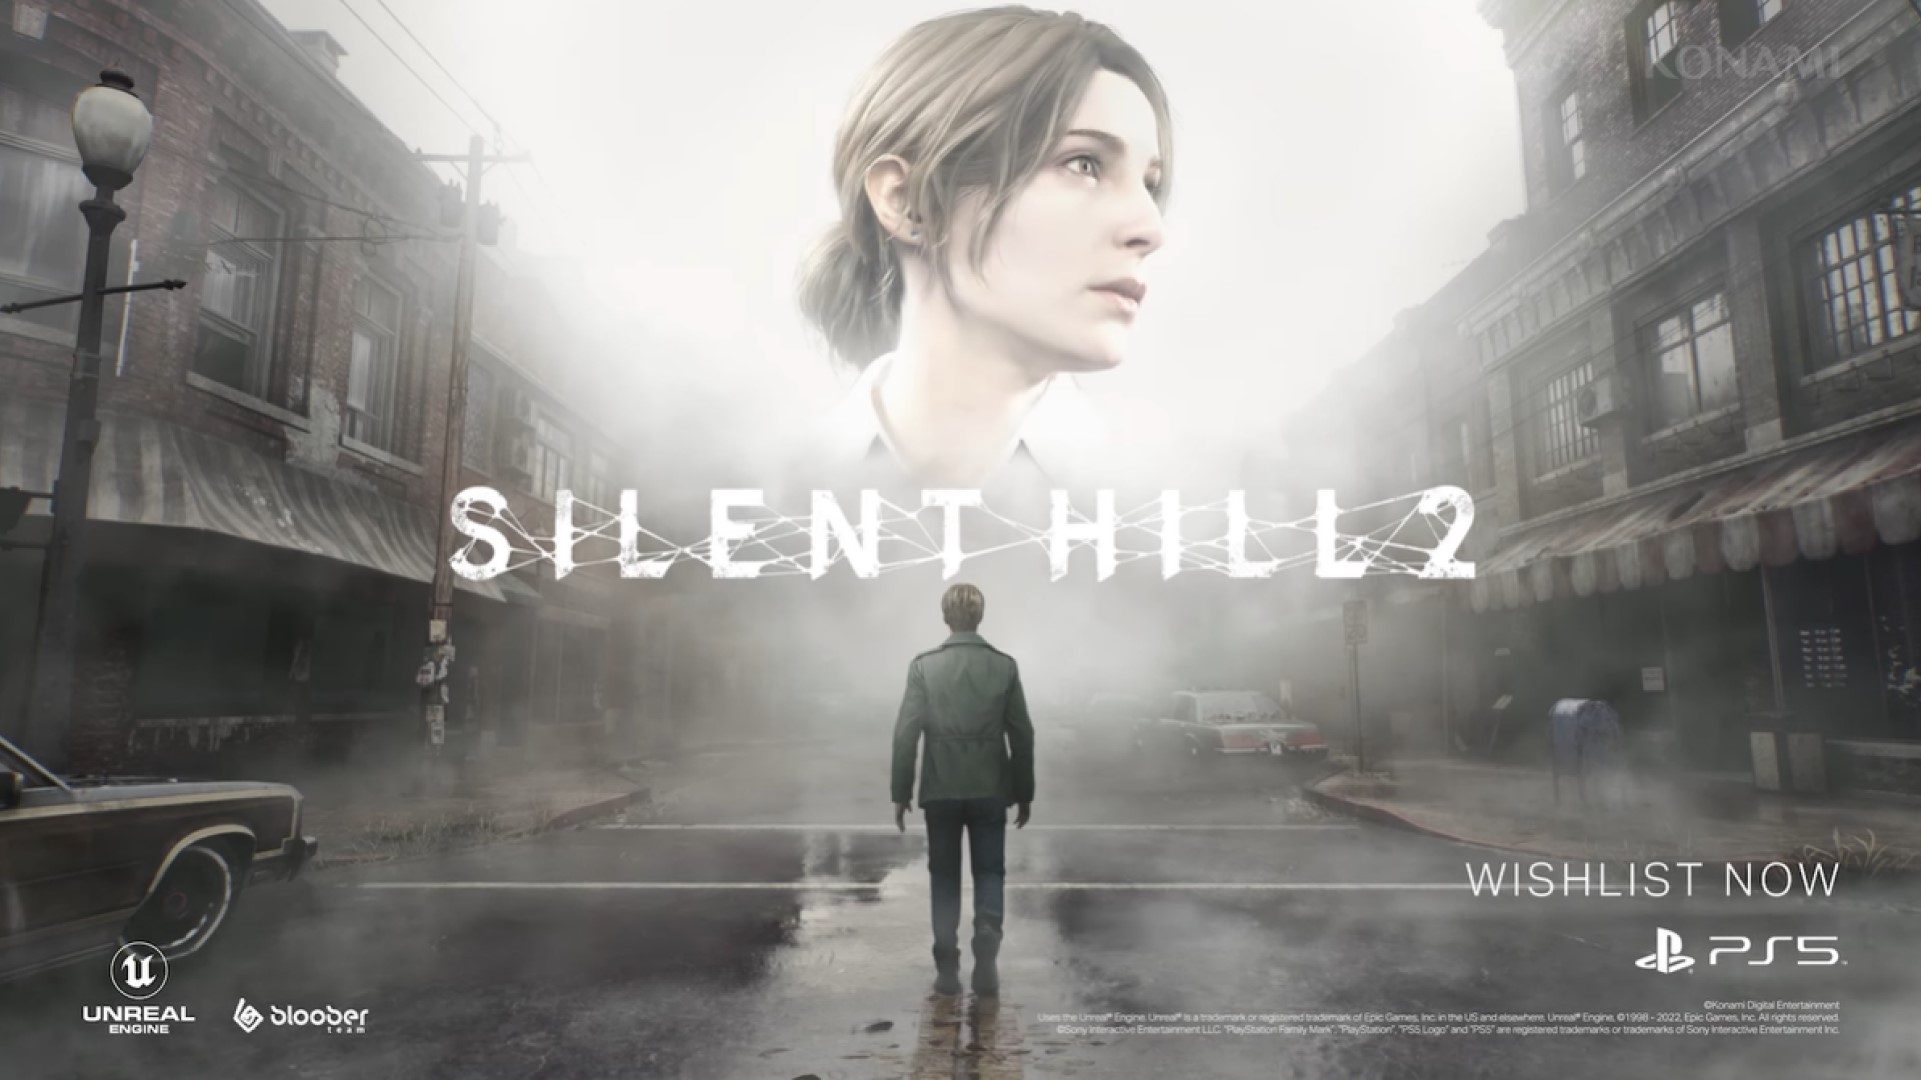 Gerucht: Silent Hill 2-remake wordt mogelijk getoond tijdens PlayStation-evenement in mei